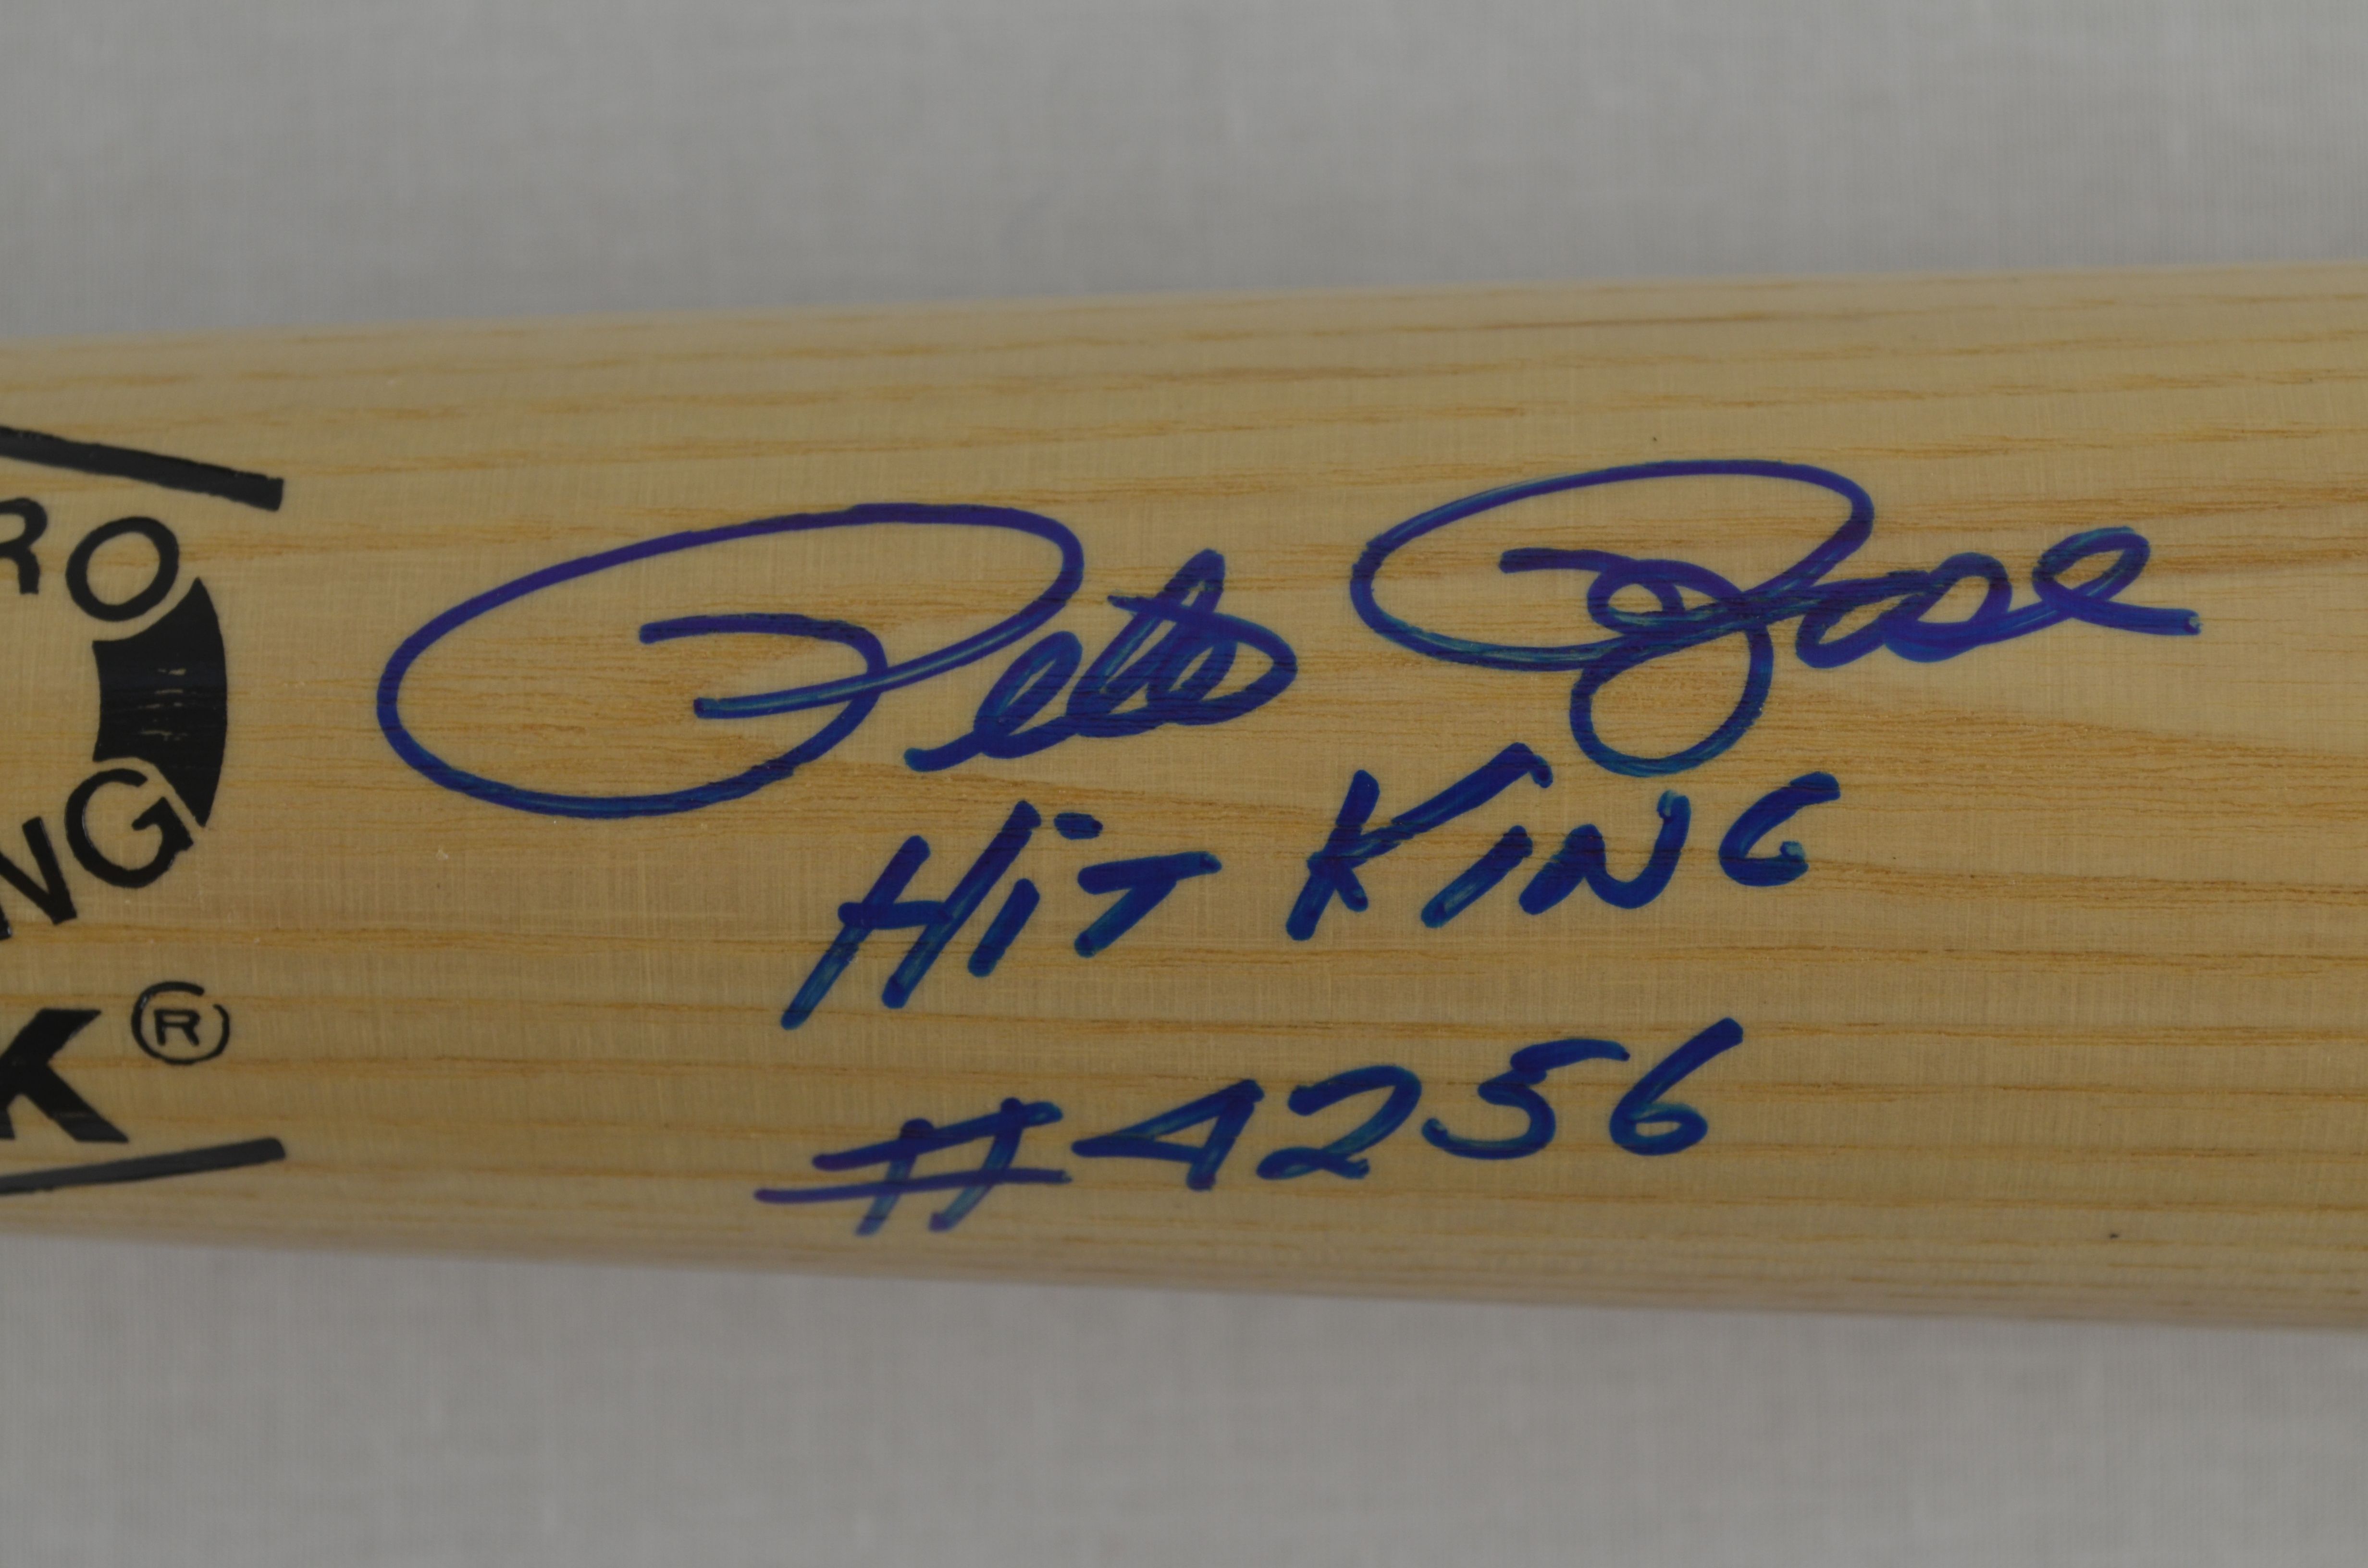 Lot Detail - Pete Rose Autographed & Inscribed Bat4928 x 3264